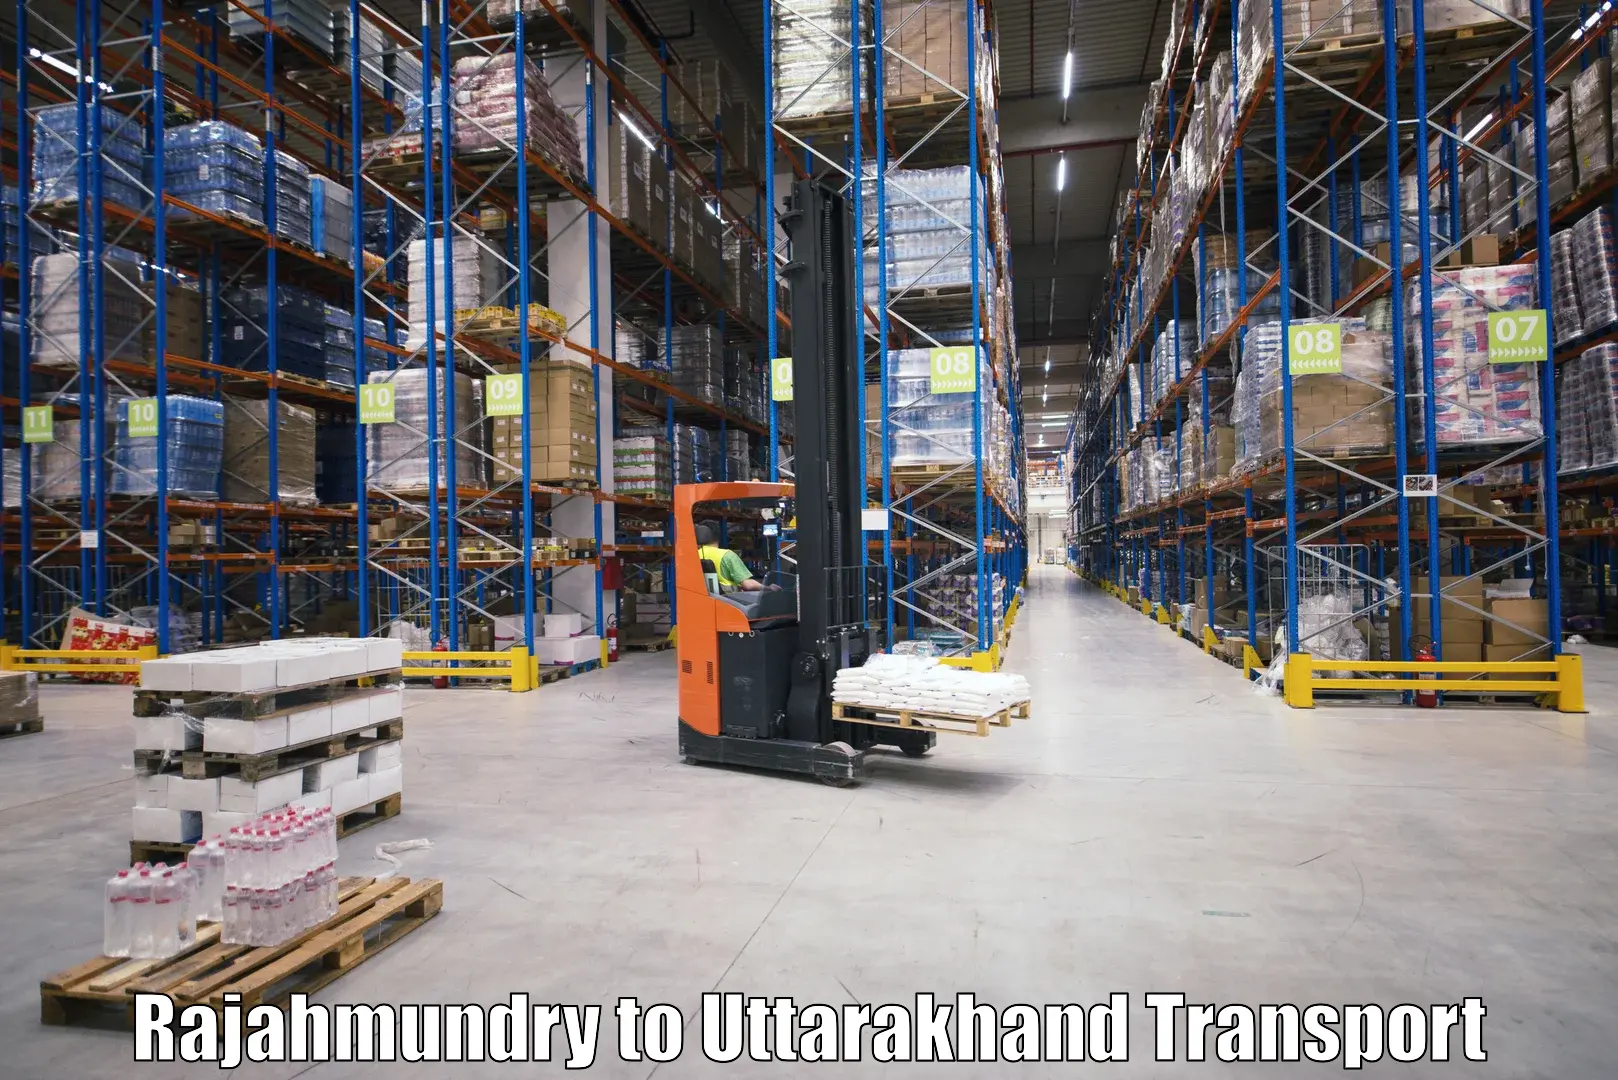 Vehicle courier services Rajahmundry to Uttarakhand